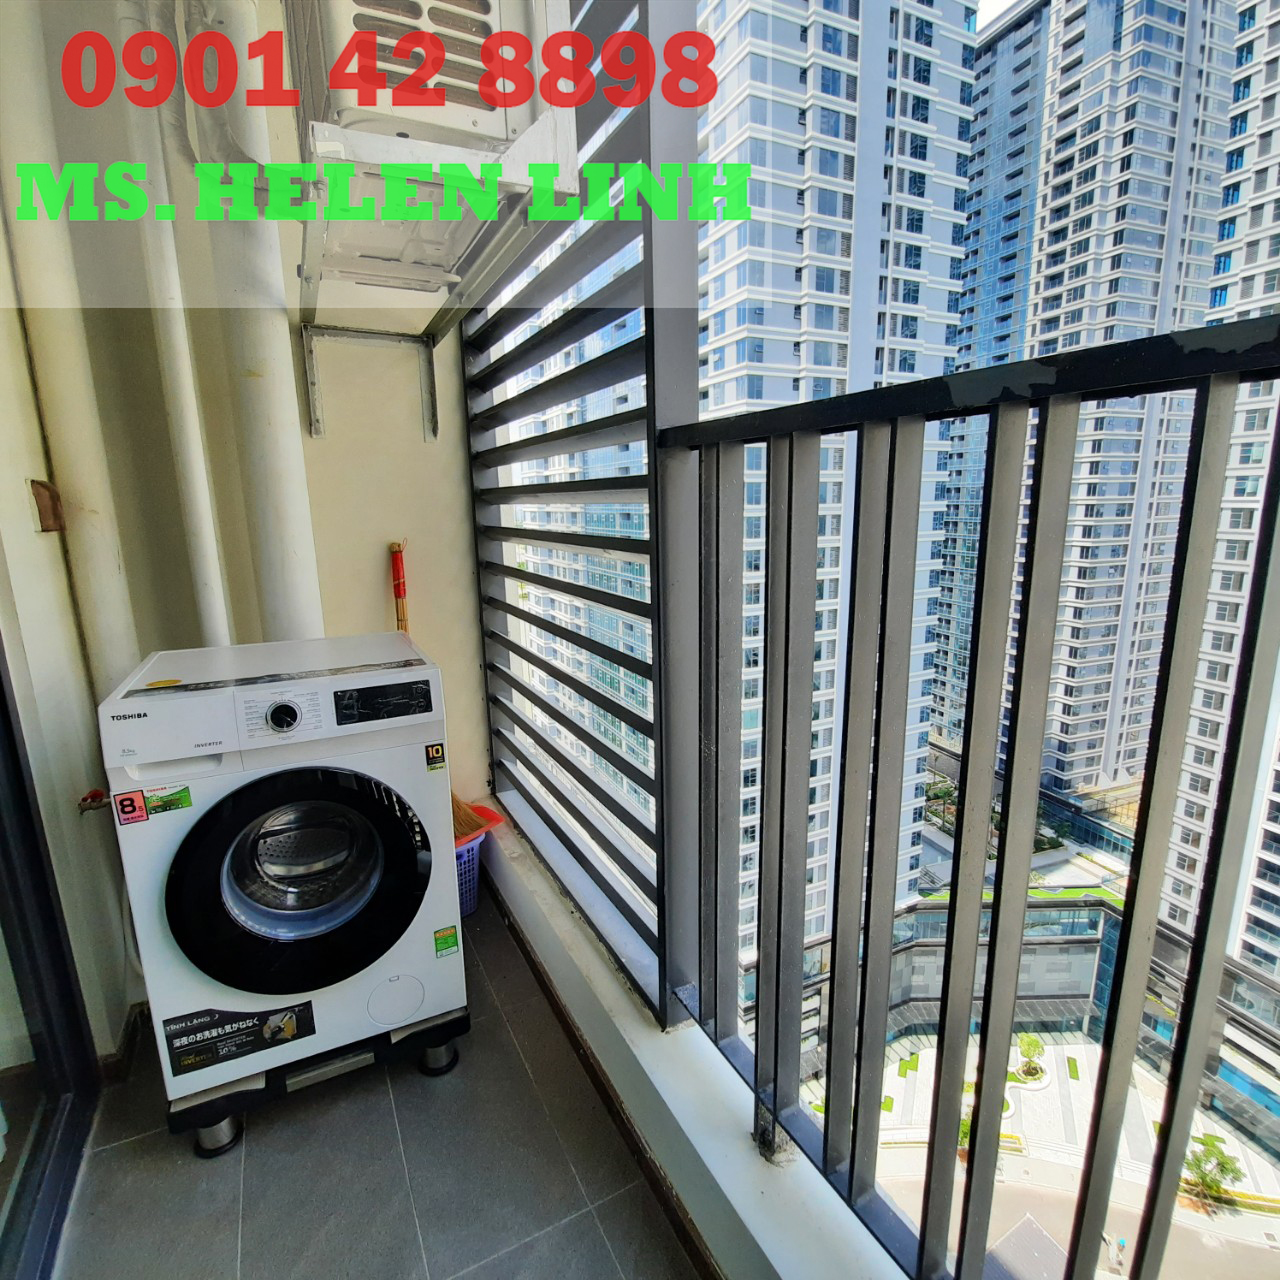 Căn hộ 1PN_50m2 đủ nội thất cho thuê dự án Opal Tower- Saigon Pearl. Hotline PKD: 0901428898